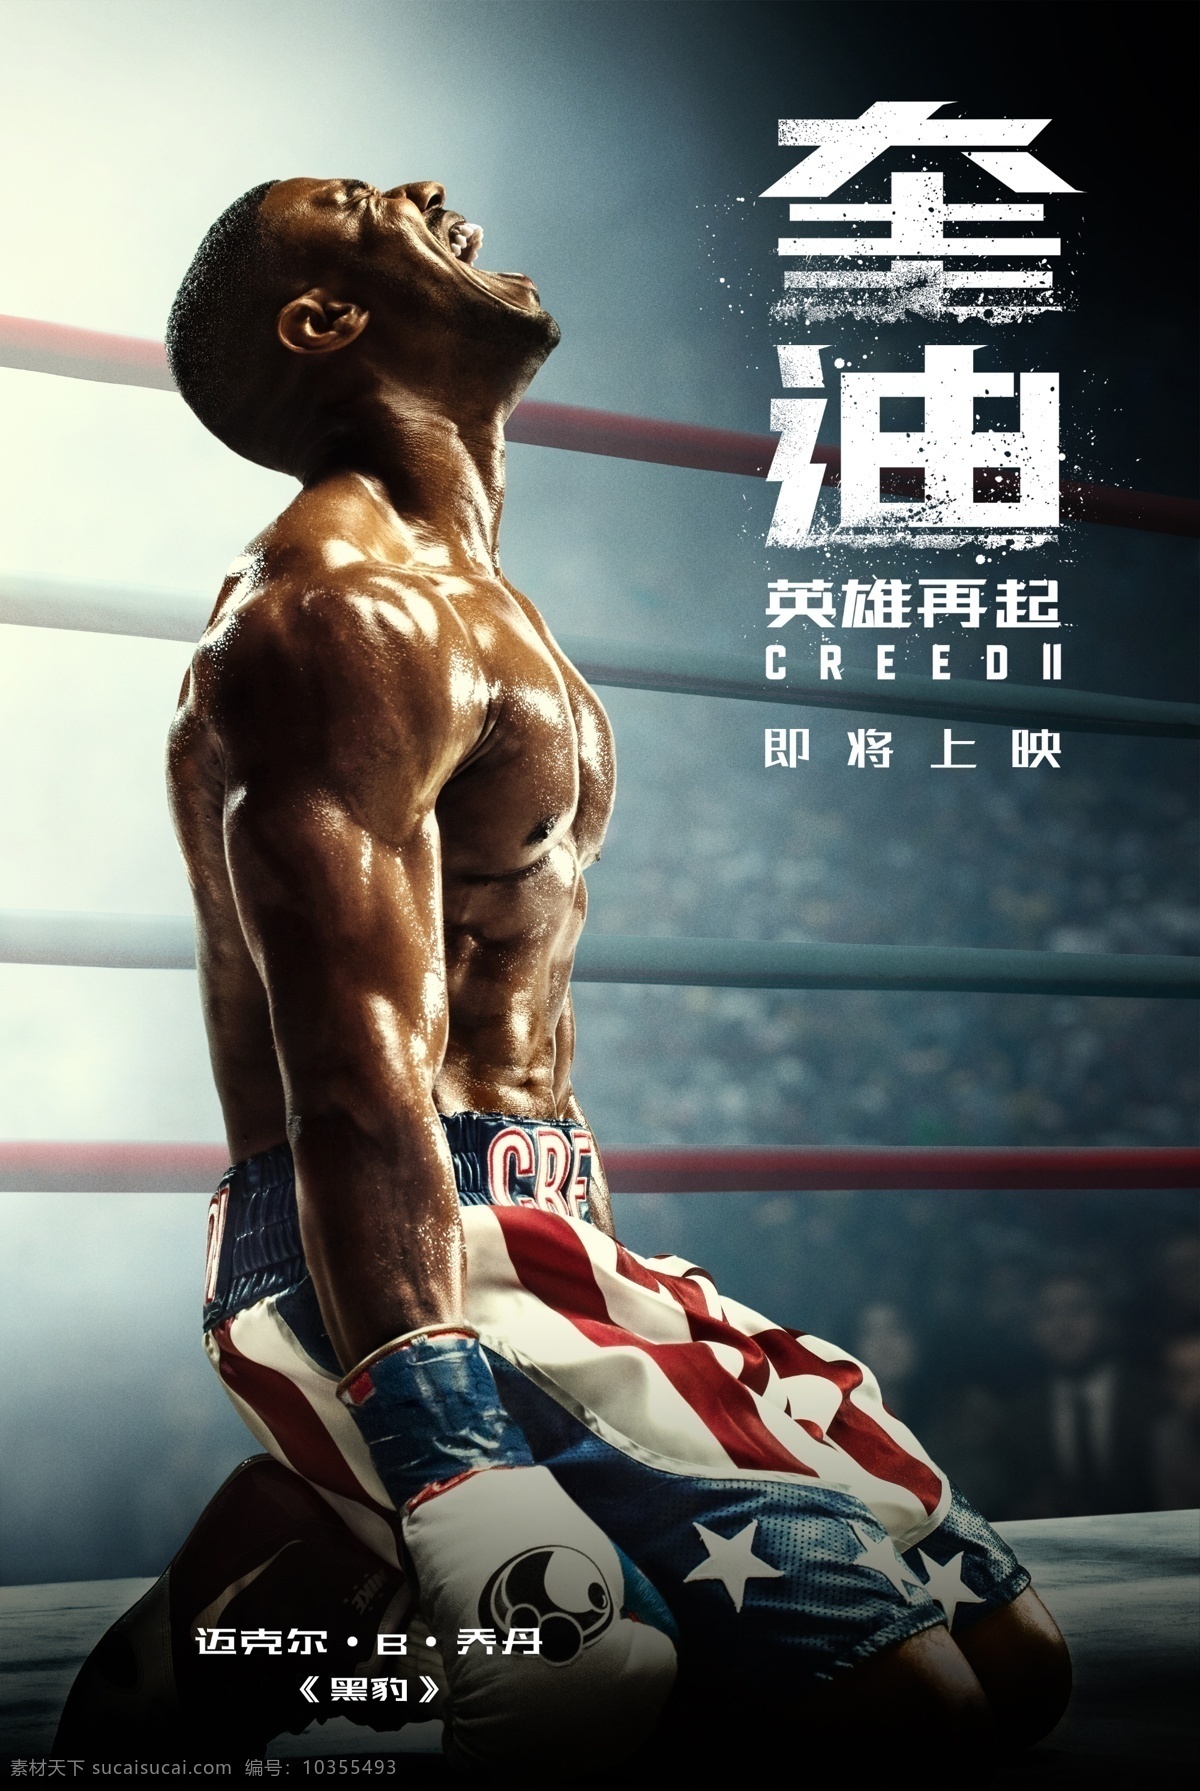 电影 奎迪 迈克尔 角色 分层 海报 乔丹 励志 动作 运动 拳击 打拳 格斗 进口影片海报